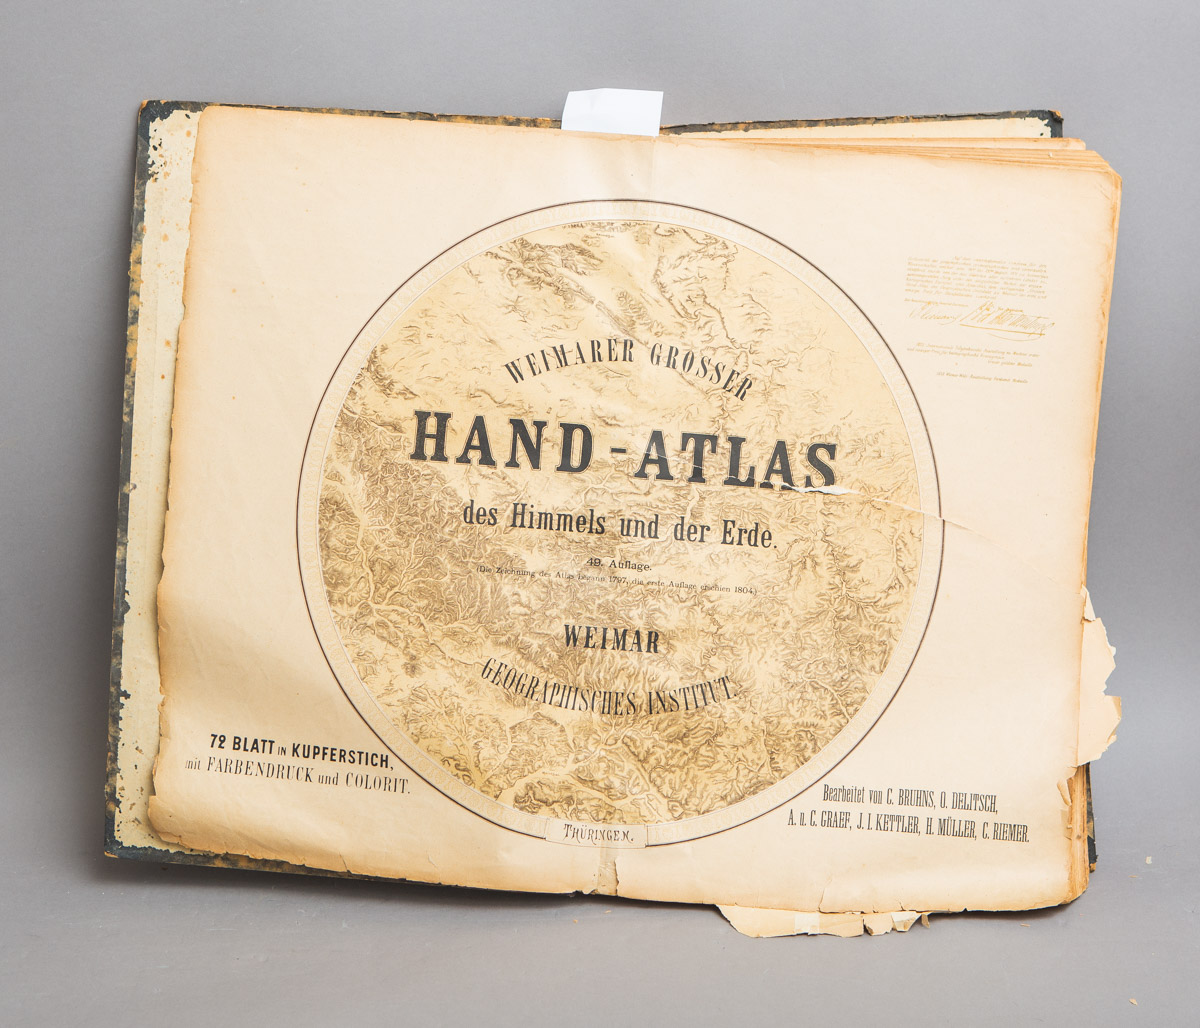 Weimarer Grosser Hand-Atlas des Himmels und der Erde